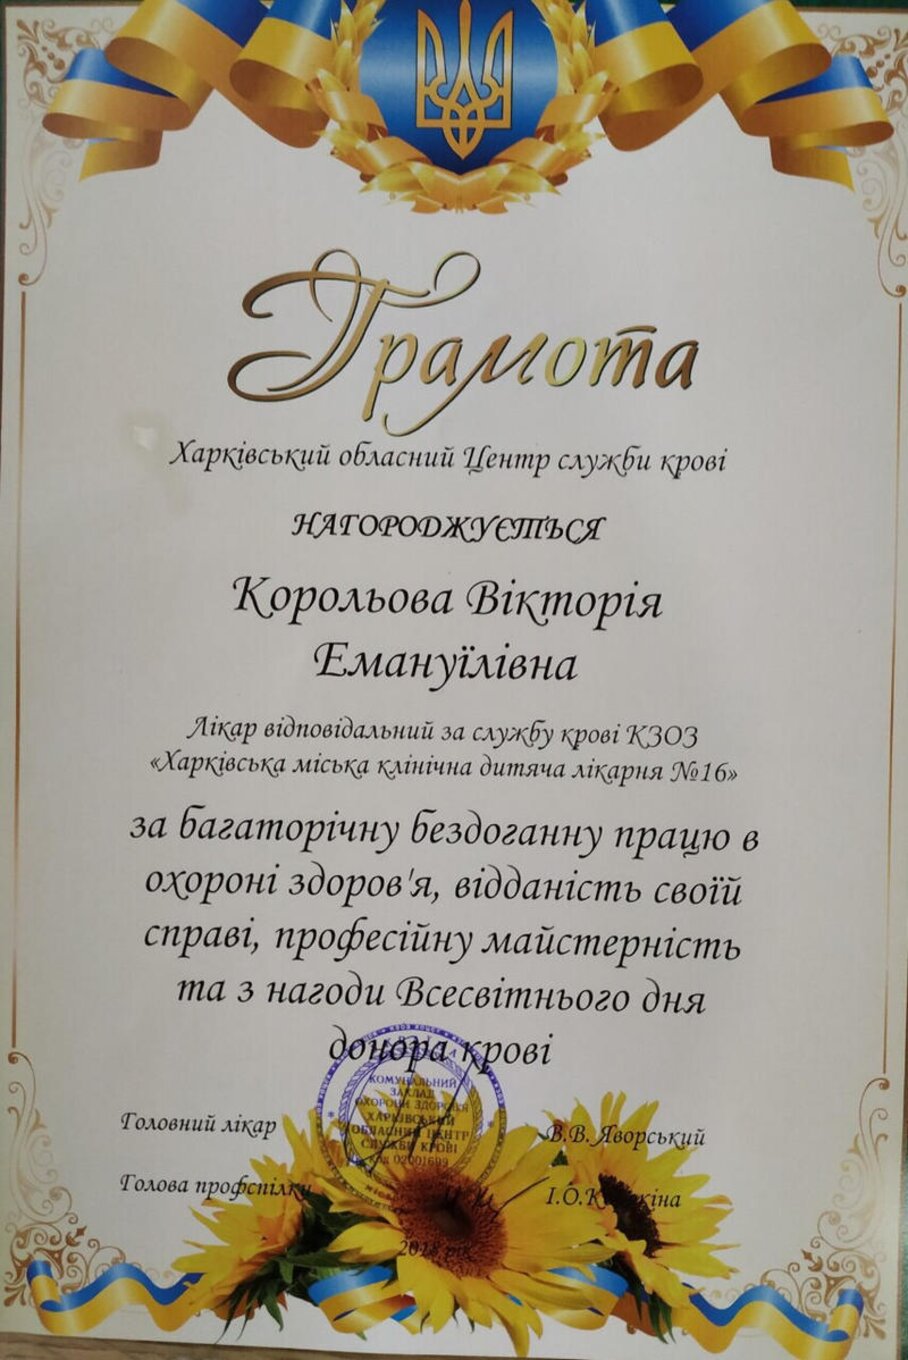 certificates/korolova-viktoriya-emanuyilivna/hemomedika-cert-koroleva-03.jpg